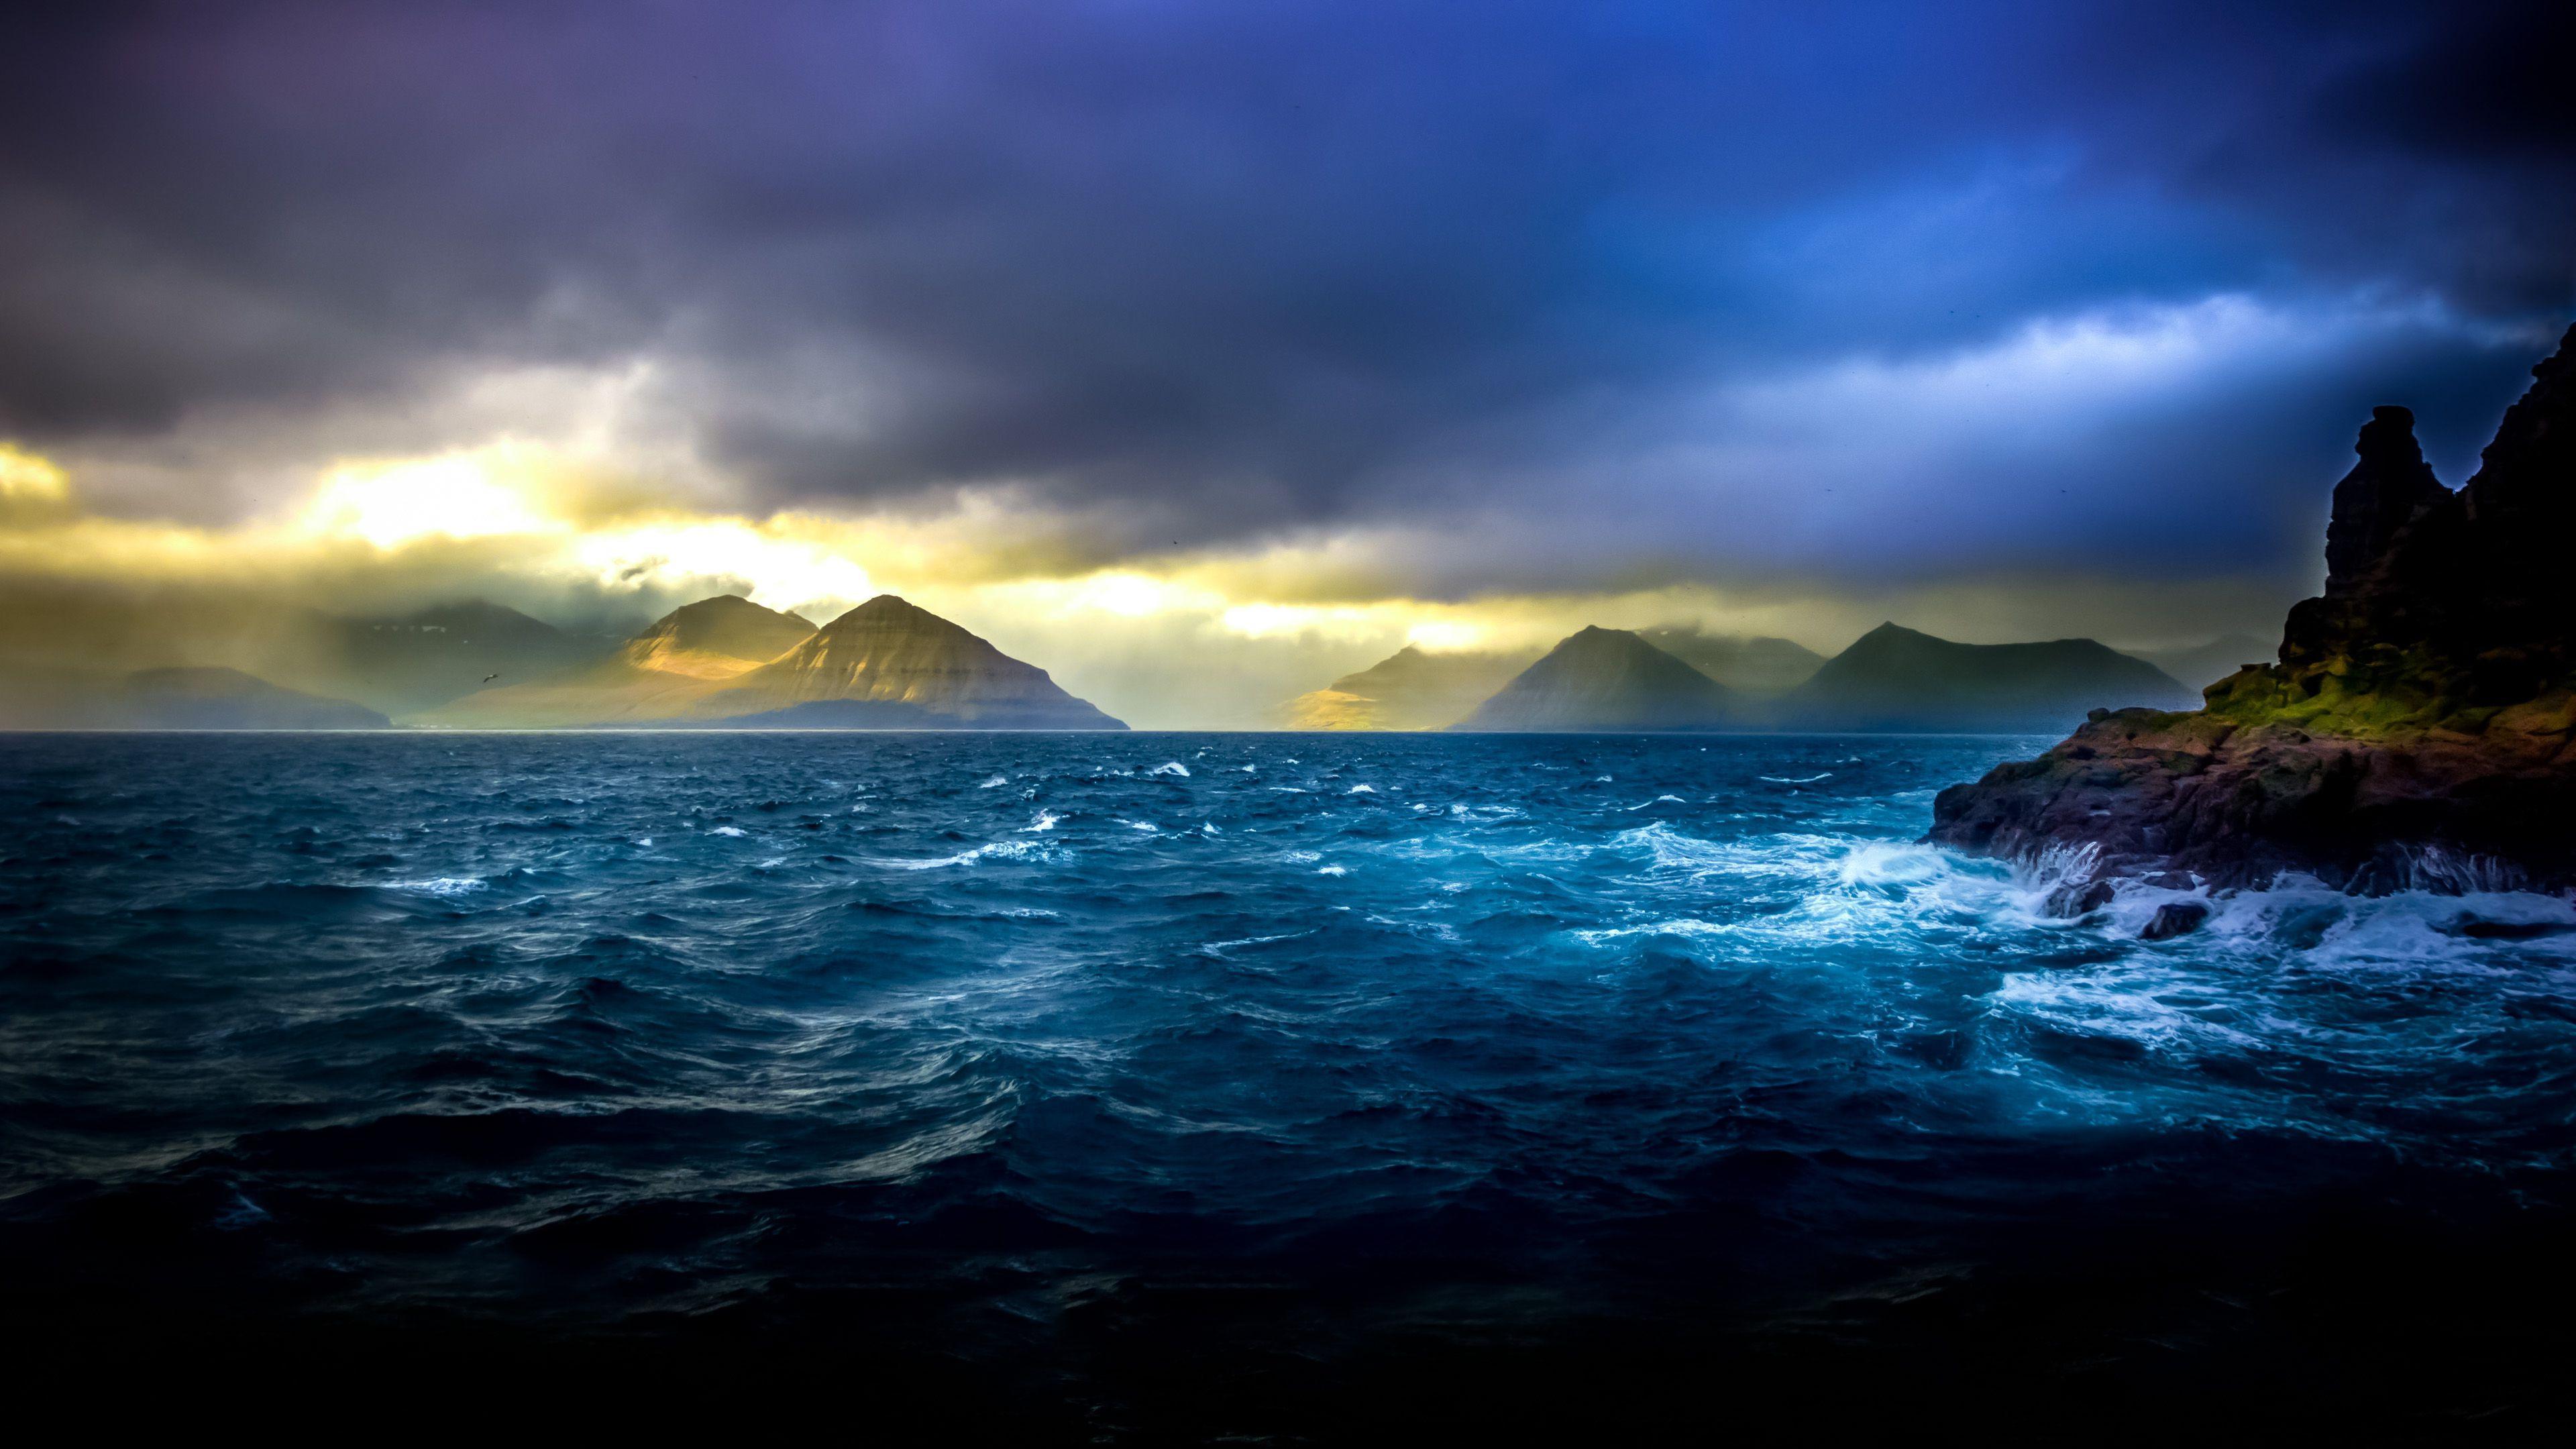 4K Ultra HD Ocean Wallpapers - Top Free 4K Ultra HD Ocean Backgrounds